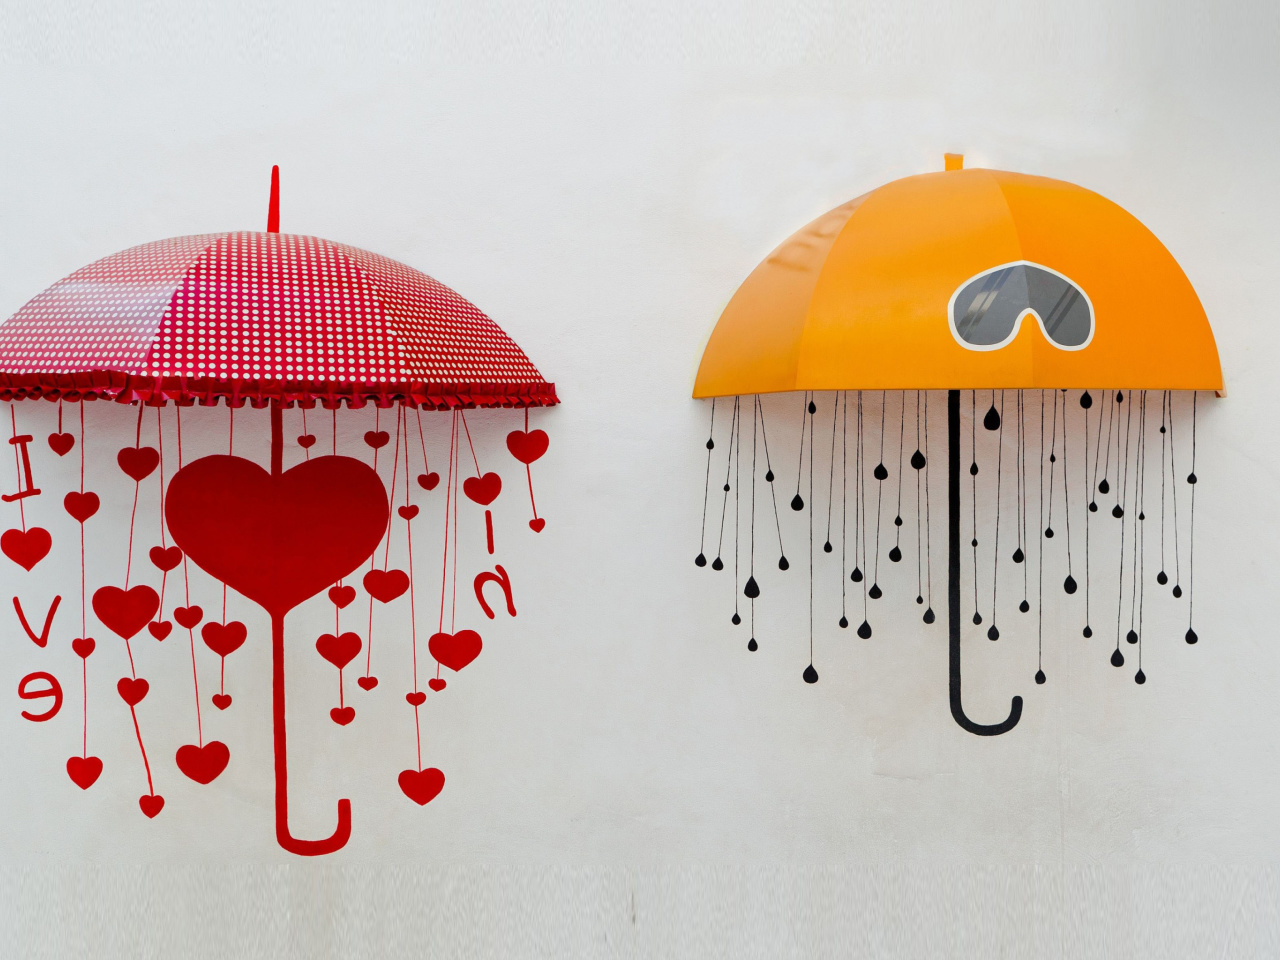 Das Two umbrellas Wallpaper 1280x960